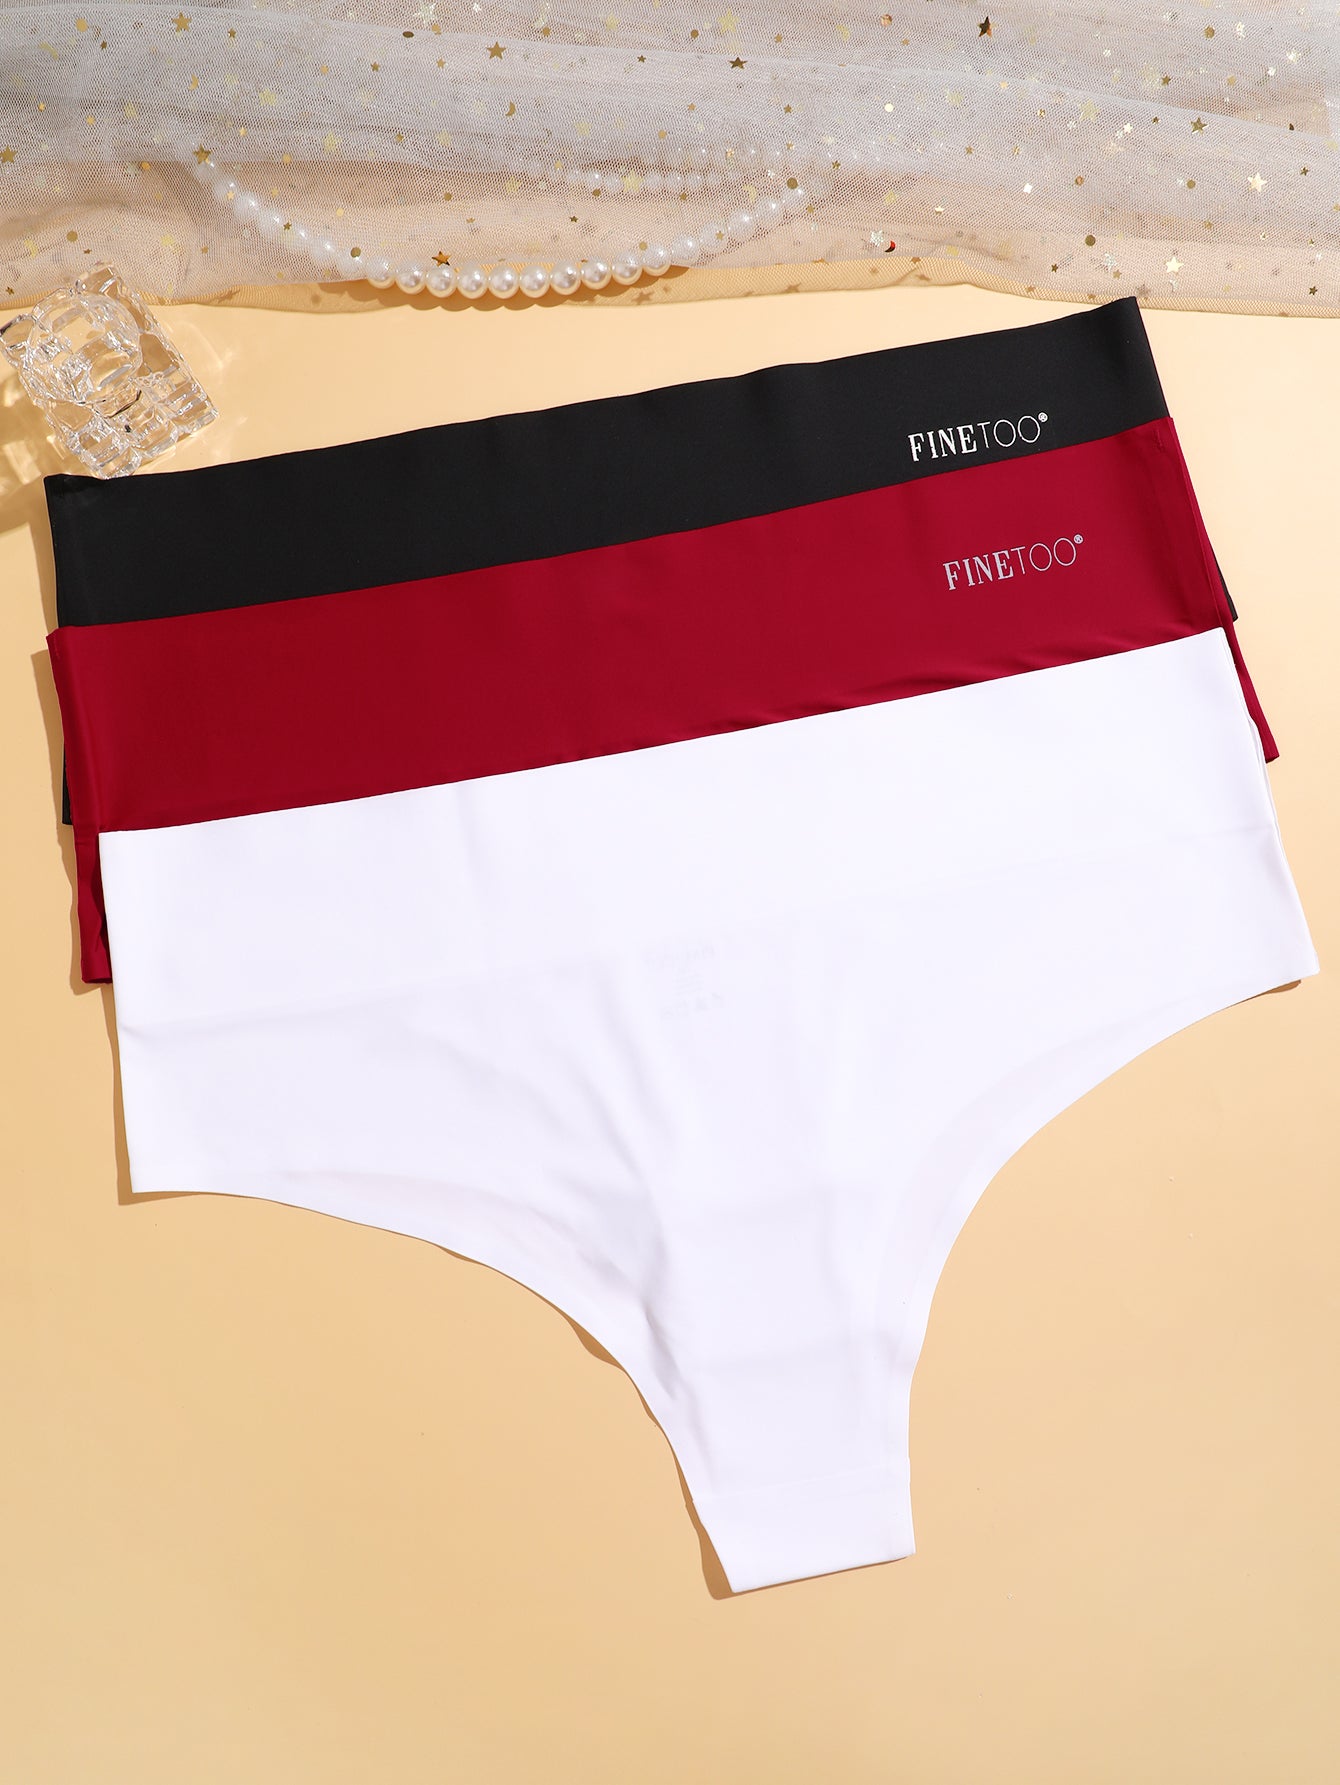 FINETOO 6 Pack Women's Seamless Hipster Underwear Palestine